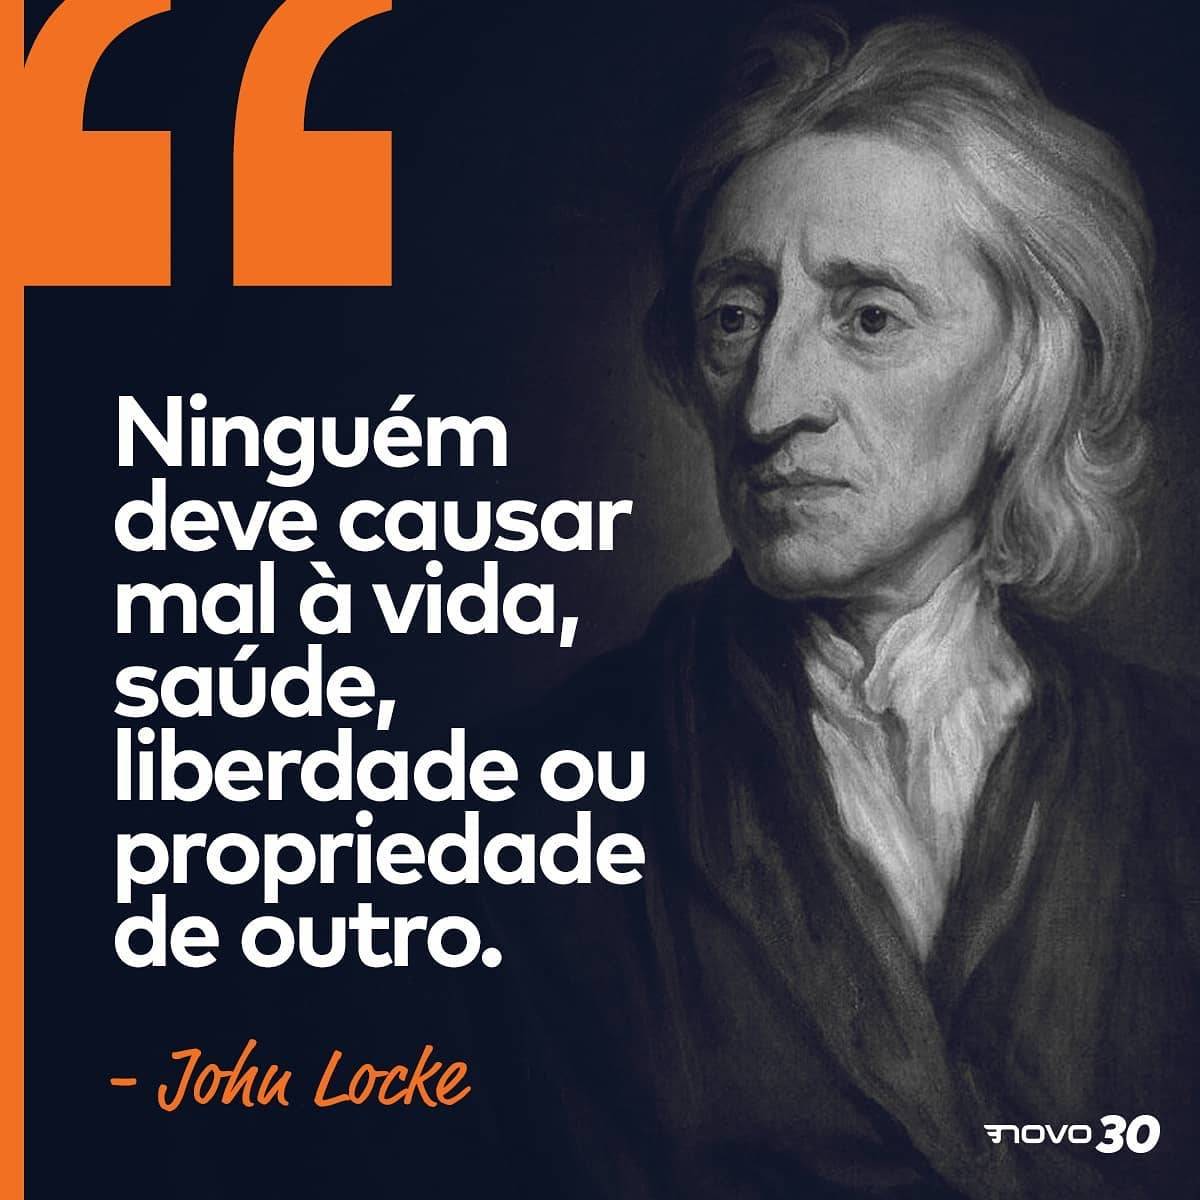 John Locke - NOVO